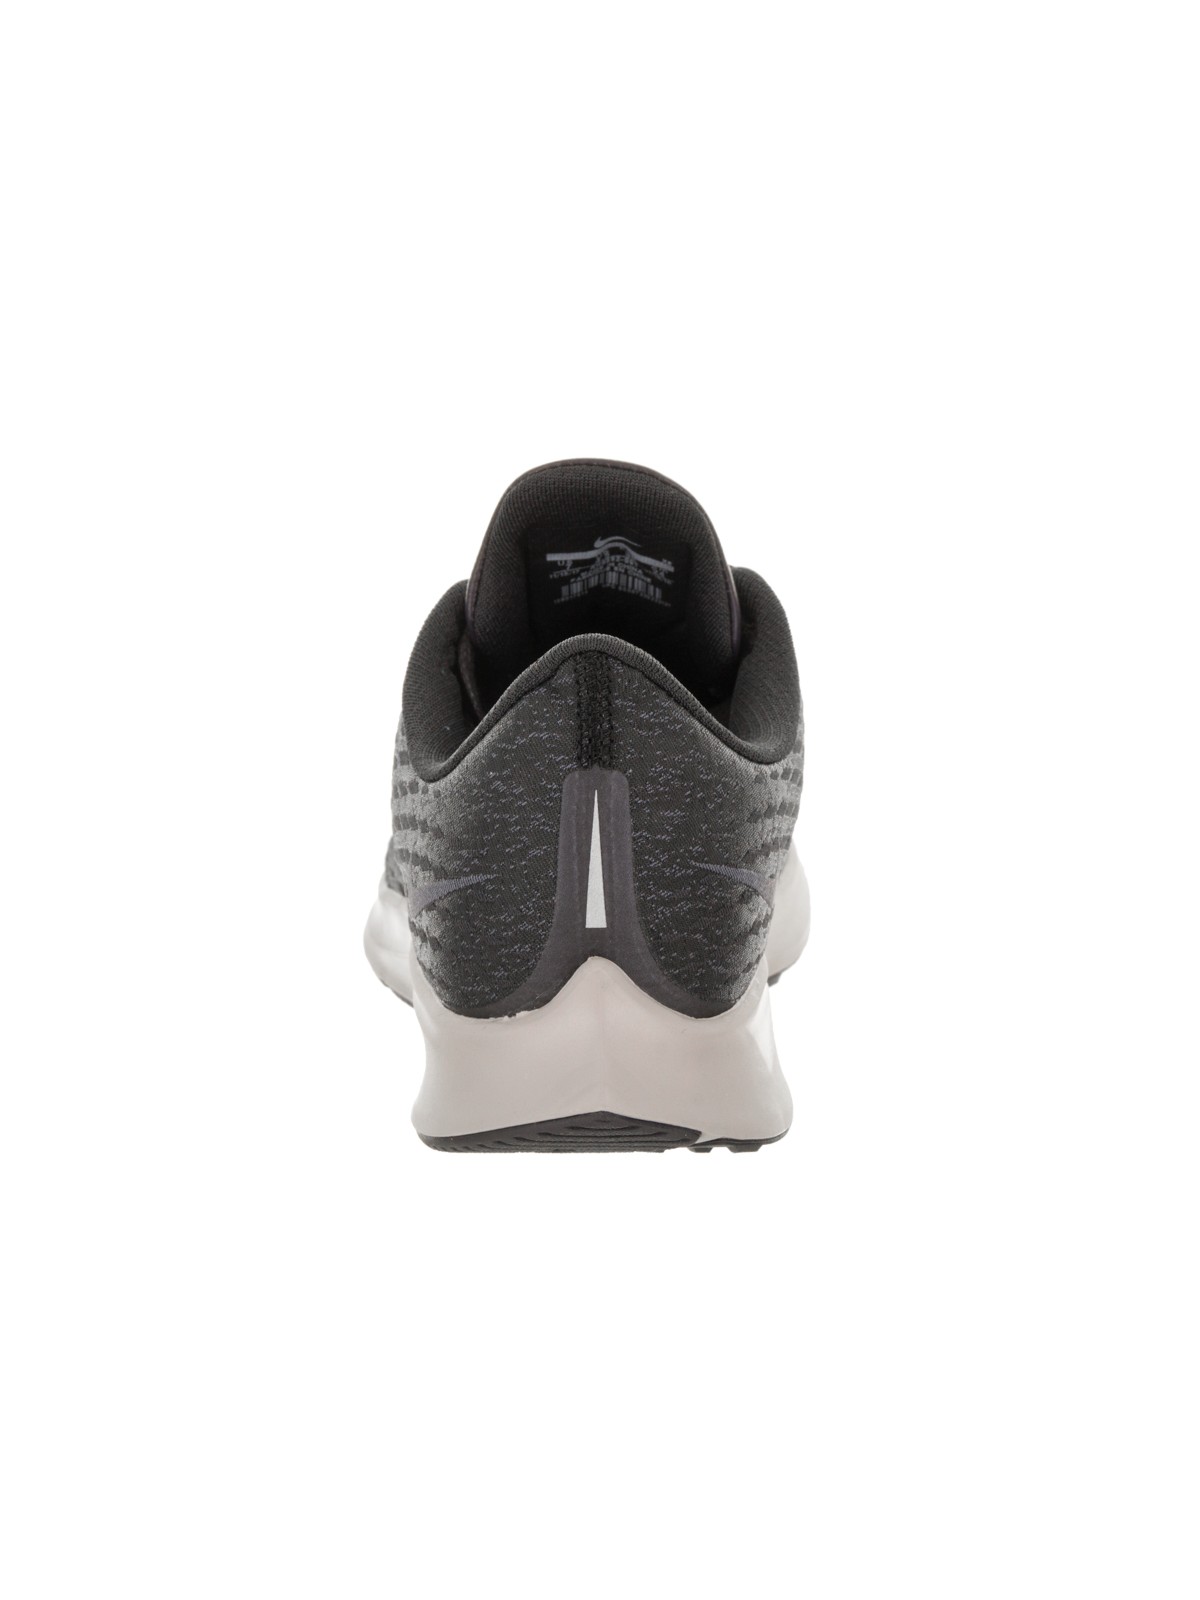 Nike Women's Air Zoom Pegasus 35 Prm Running Shoe - image 4 of 5